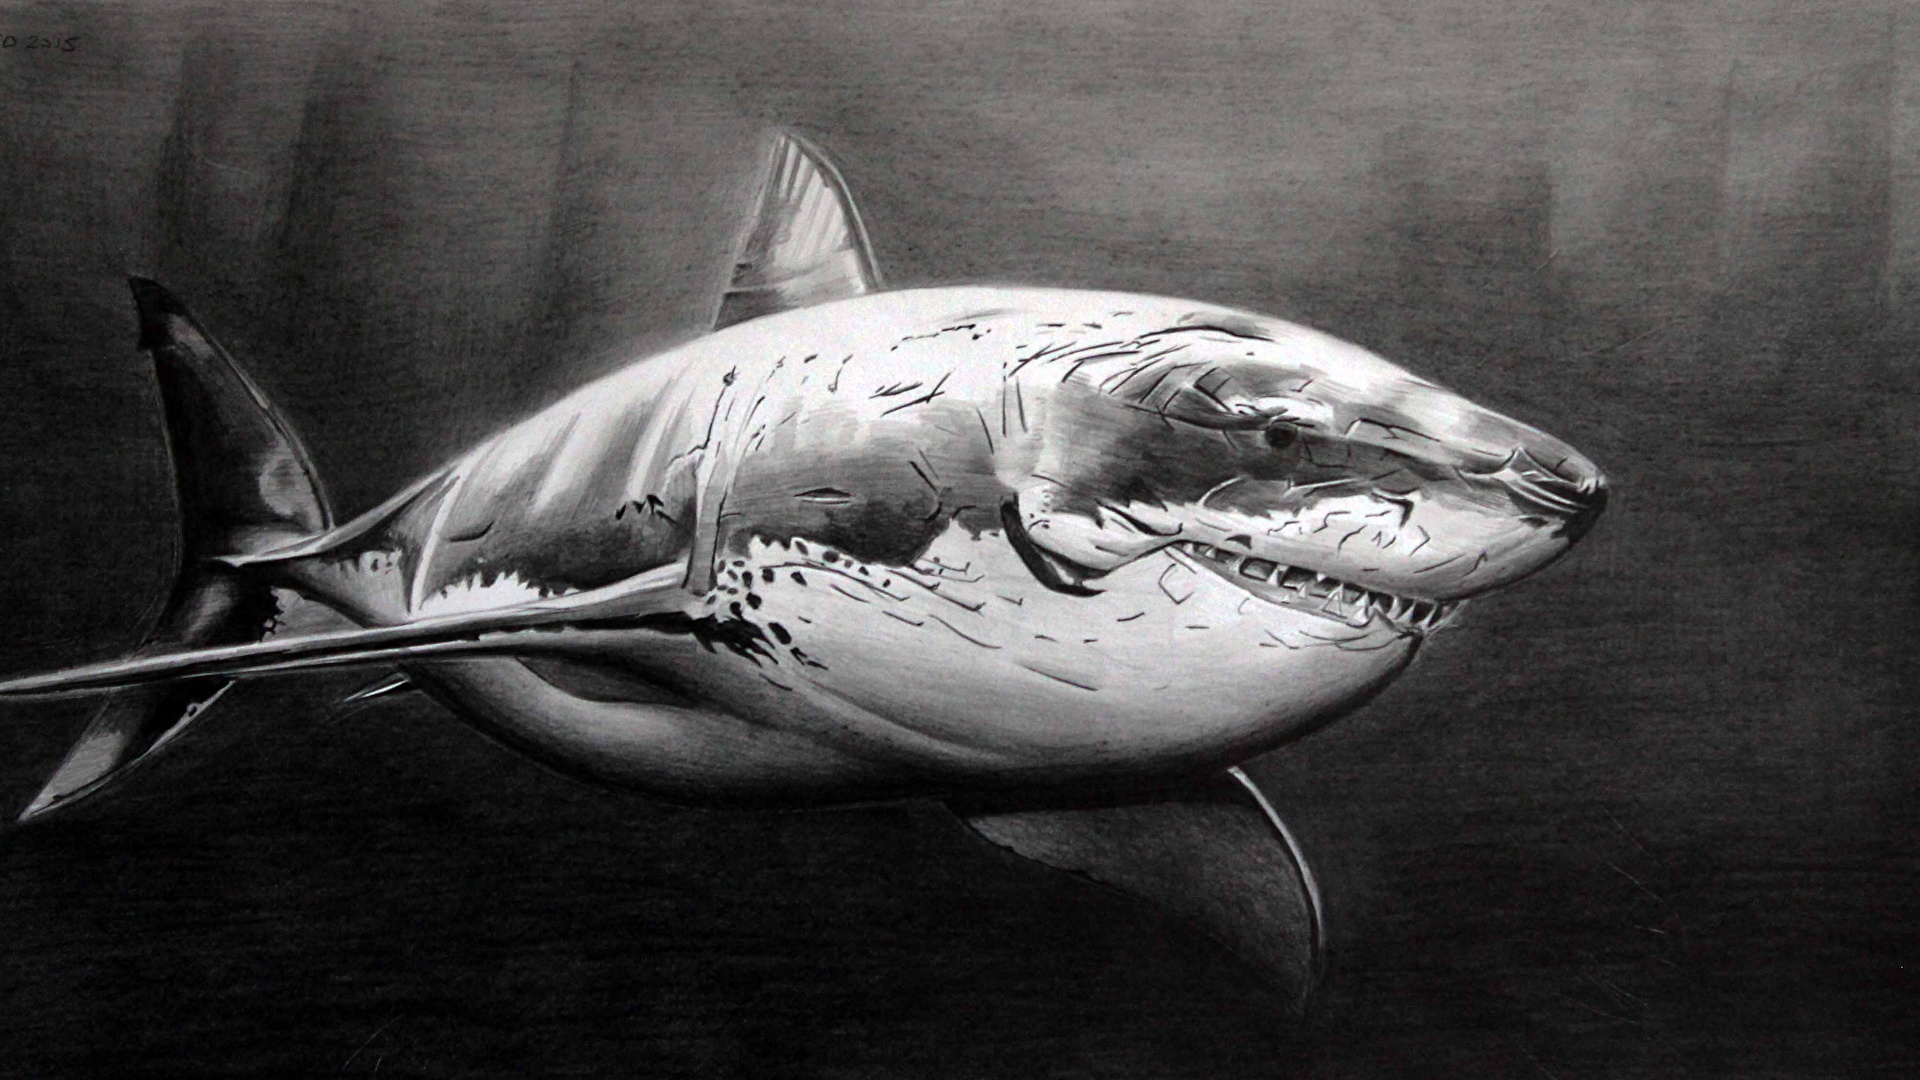 壁紙 1920x1080 サメ 描かれた壁紙 白黒 動物 ダウンロード 写真